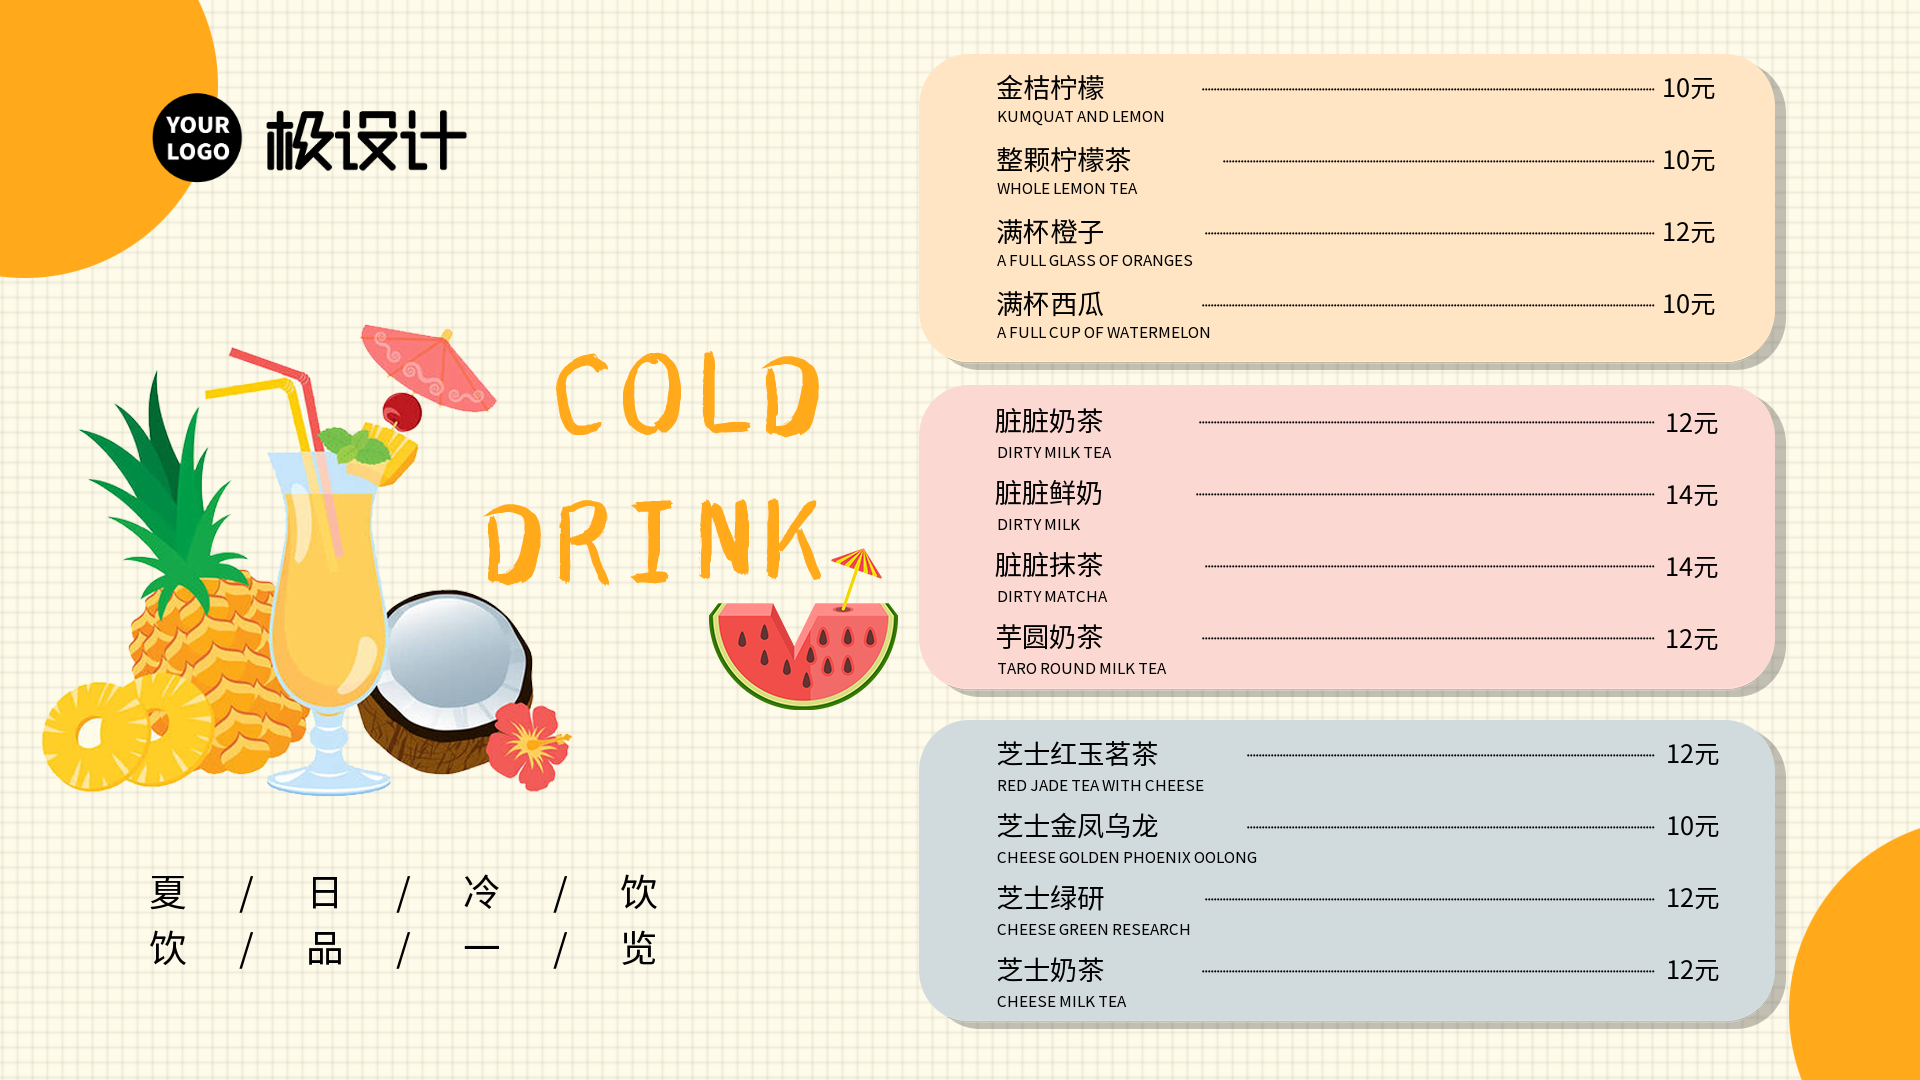 夏日冷饮饮品一览表-横